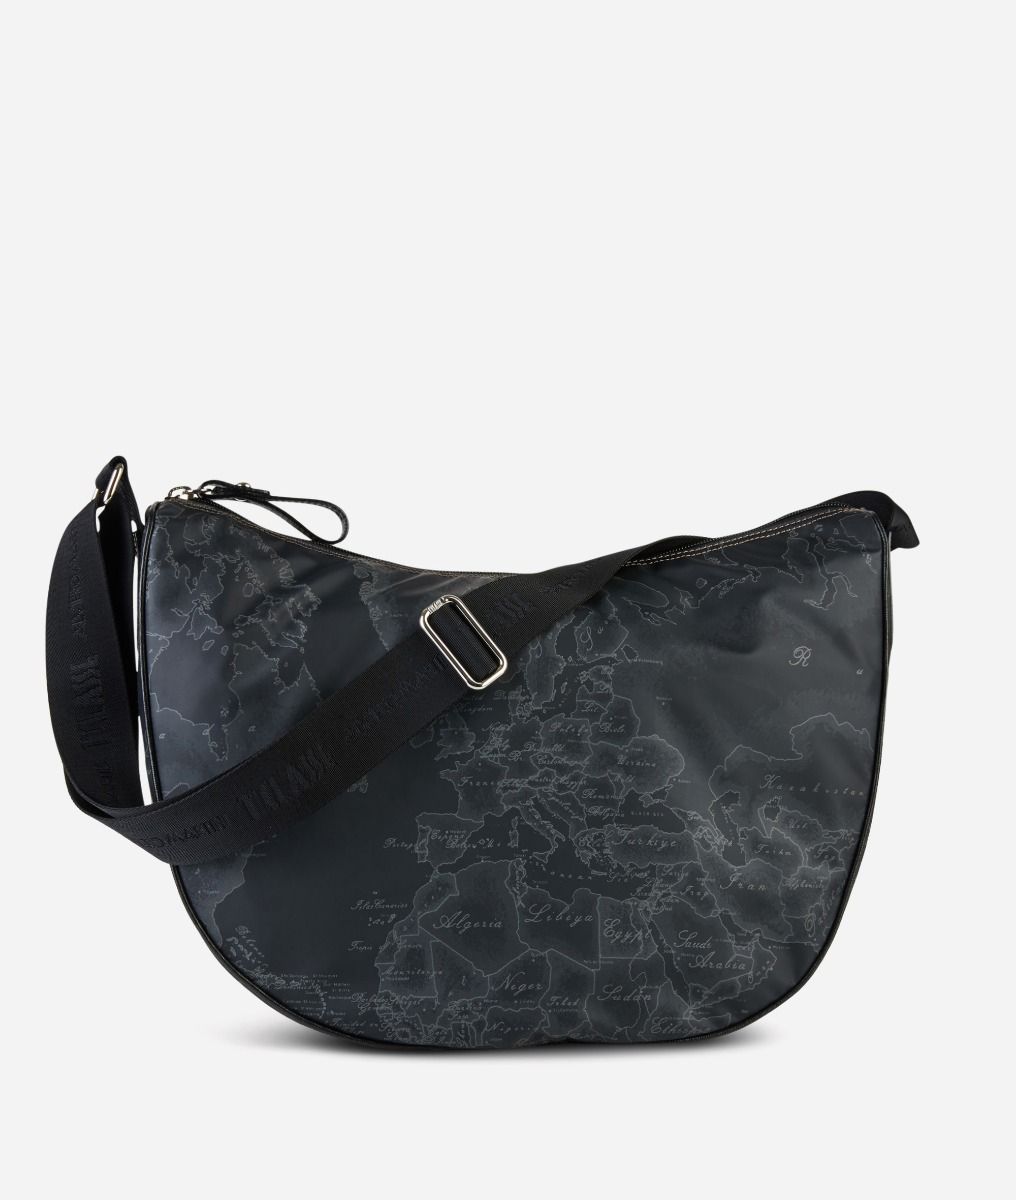 Geo Soft Black Large half-moon bag,front